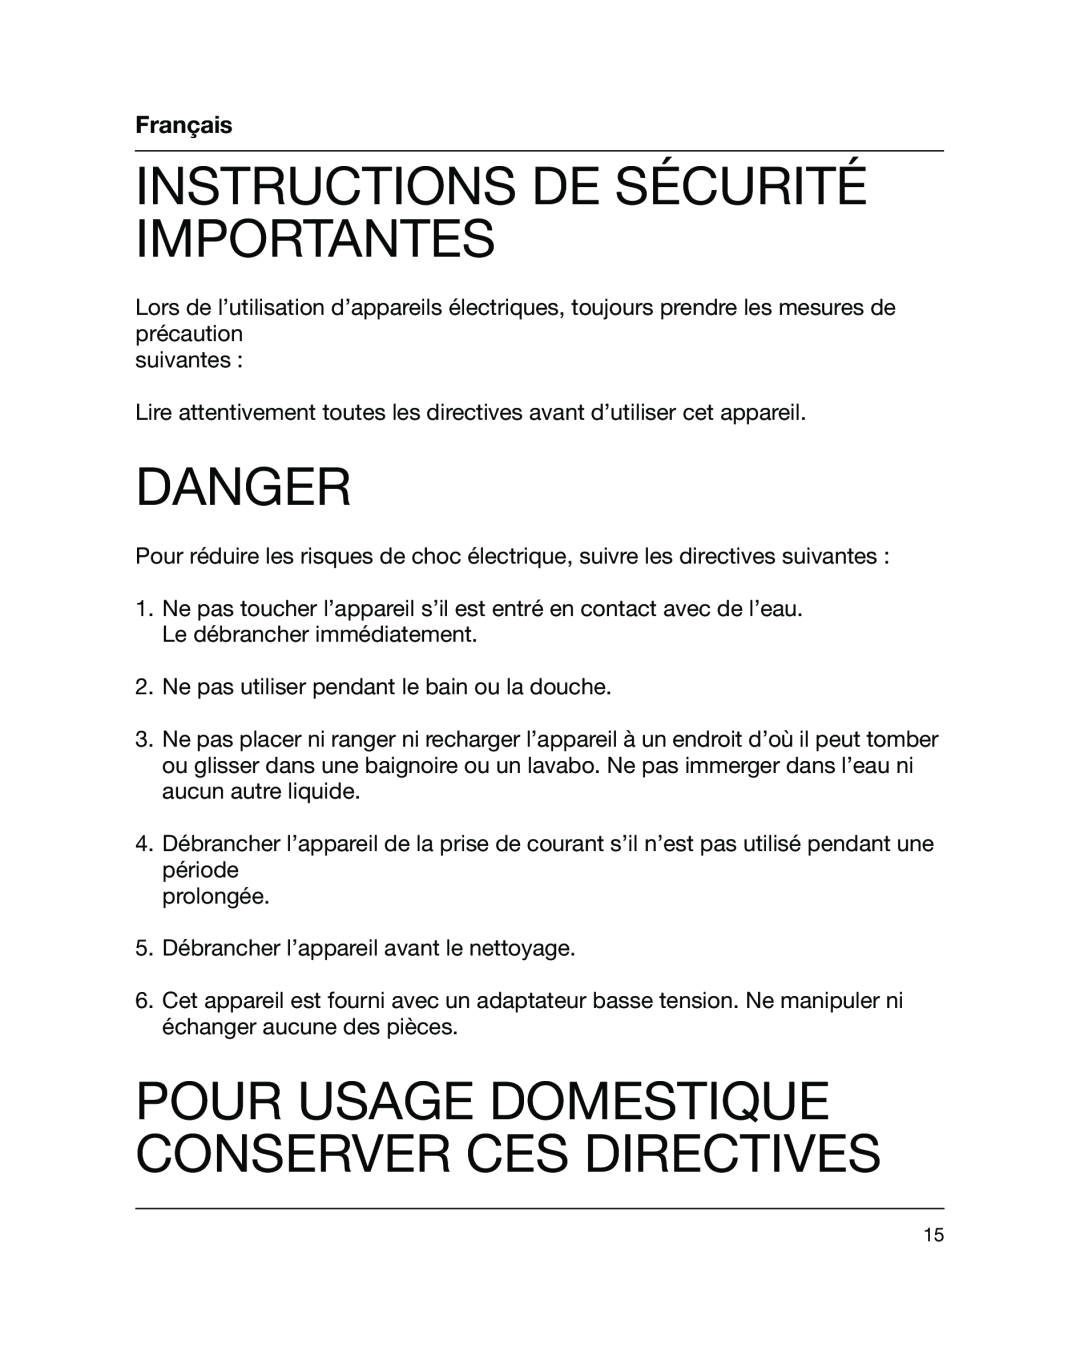 Braun 5441 manual Instructions De Sécurité Importantes, Pour Usage Domestique Conserver Ces Directives, Français, Danger 